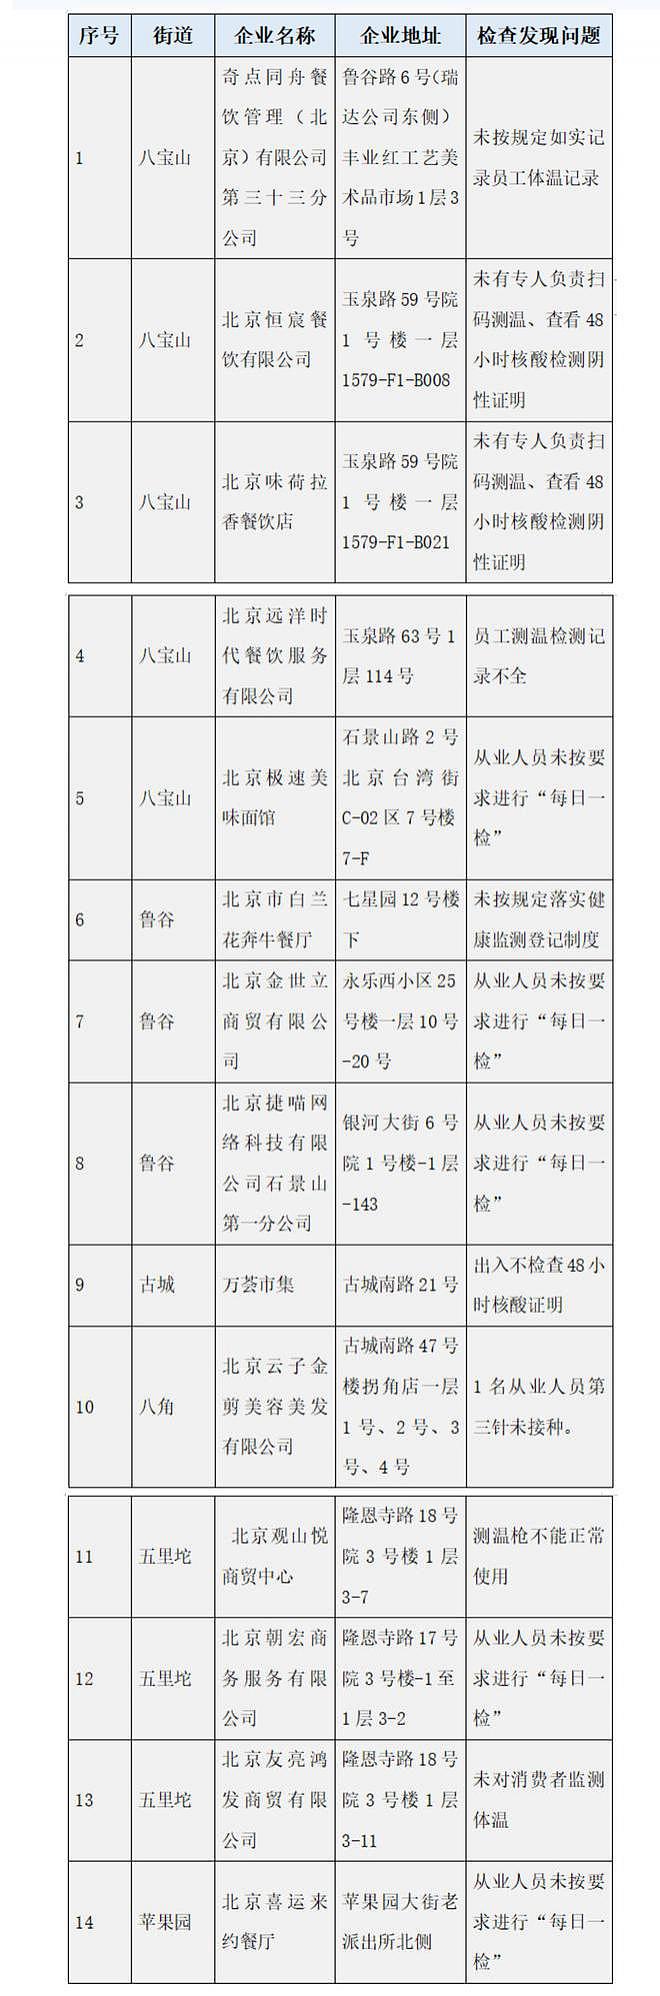 北京：66 家企业防疫不力被通报，涉周黑鸭、达美乐、快乐蜂等 - 3